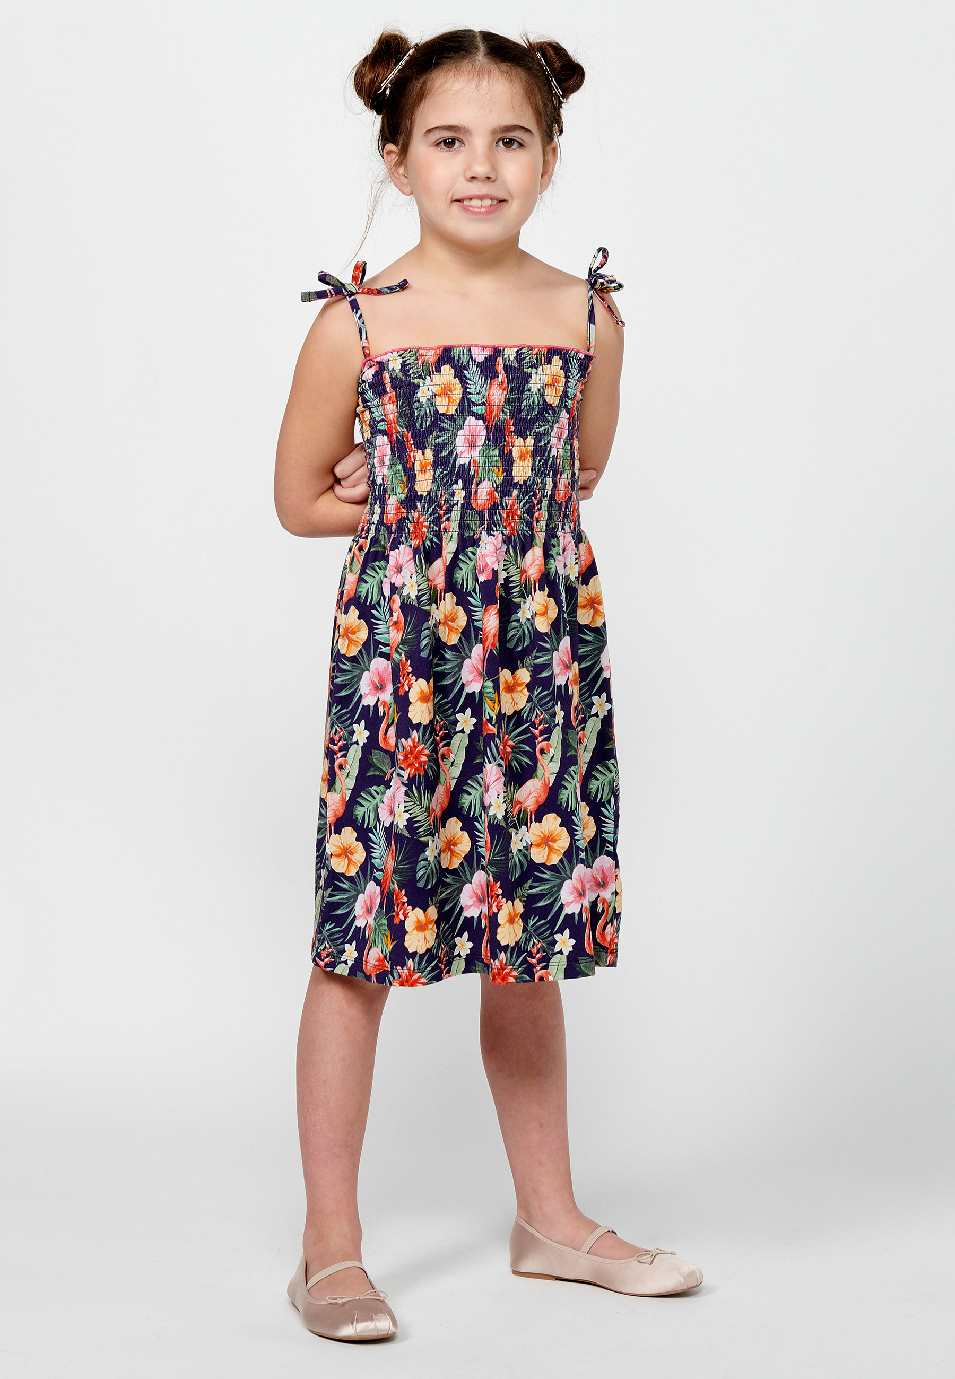 Robe à bretelles pour fille, imprimé floral multicolore, avec taille gommée 1